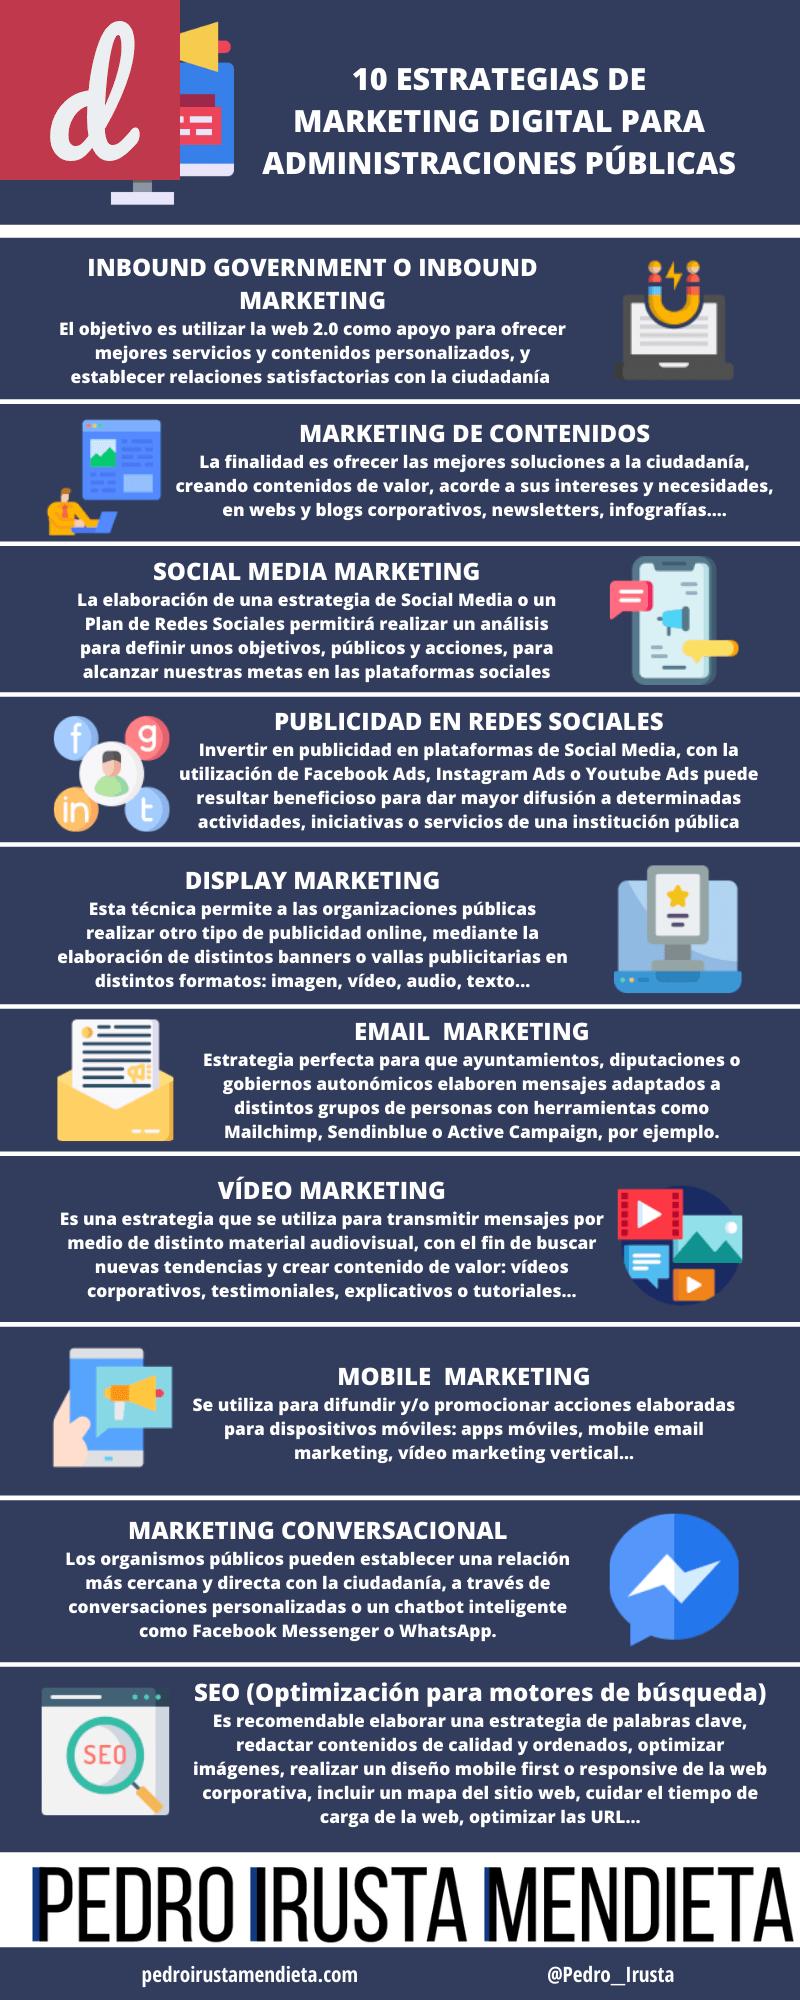 Las mejores prácticas para gestionar y organizar tu estrategia de marketing digital en una plataforma